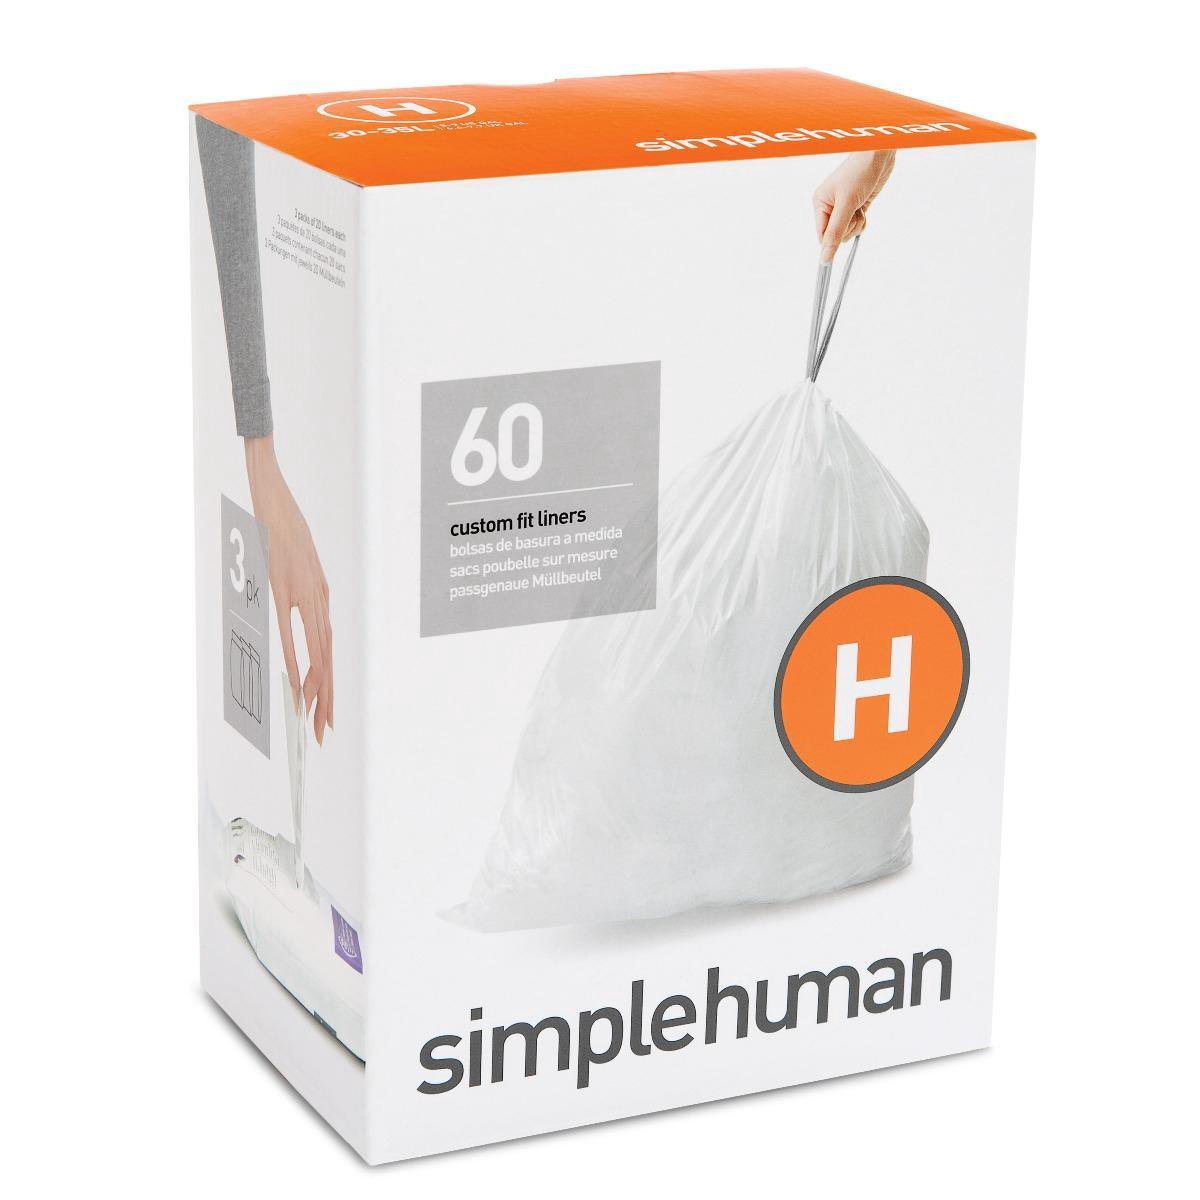 Simplehuman Vuilniszakken Code H - 30-35 Liter (60 stuks)